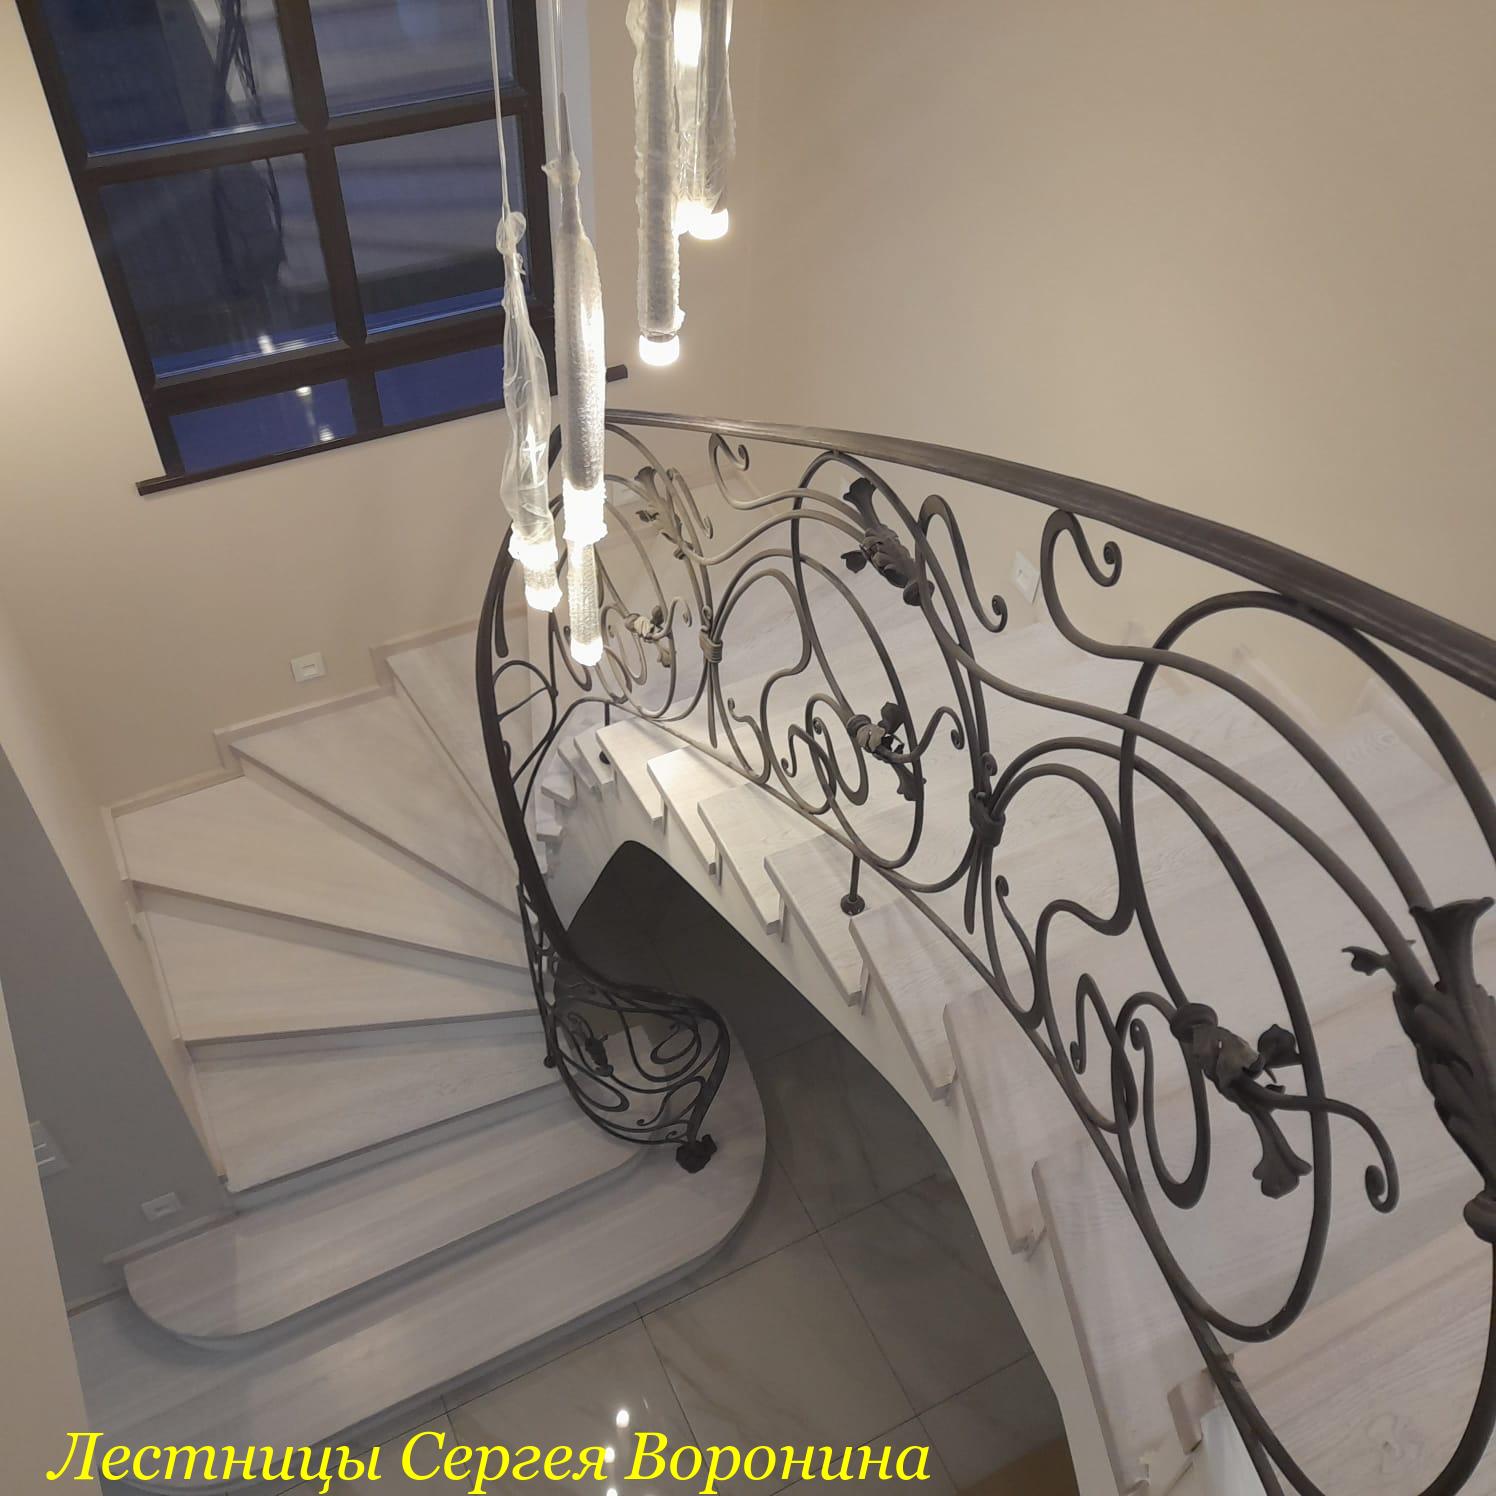 Межэтажные Лестницы Сергея Воронина, Воронеж - Лестница дома